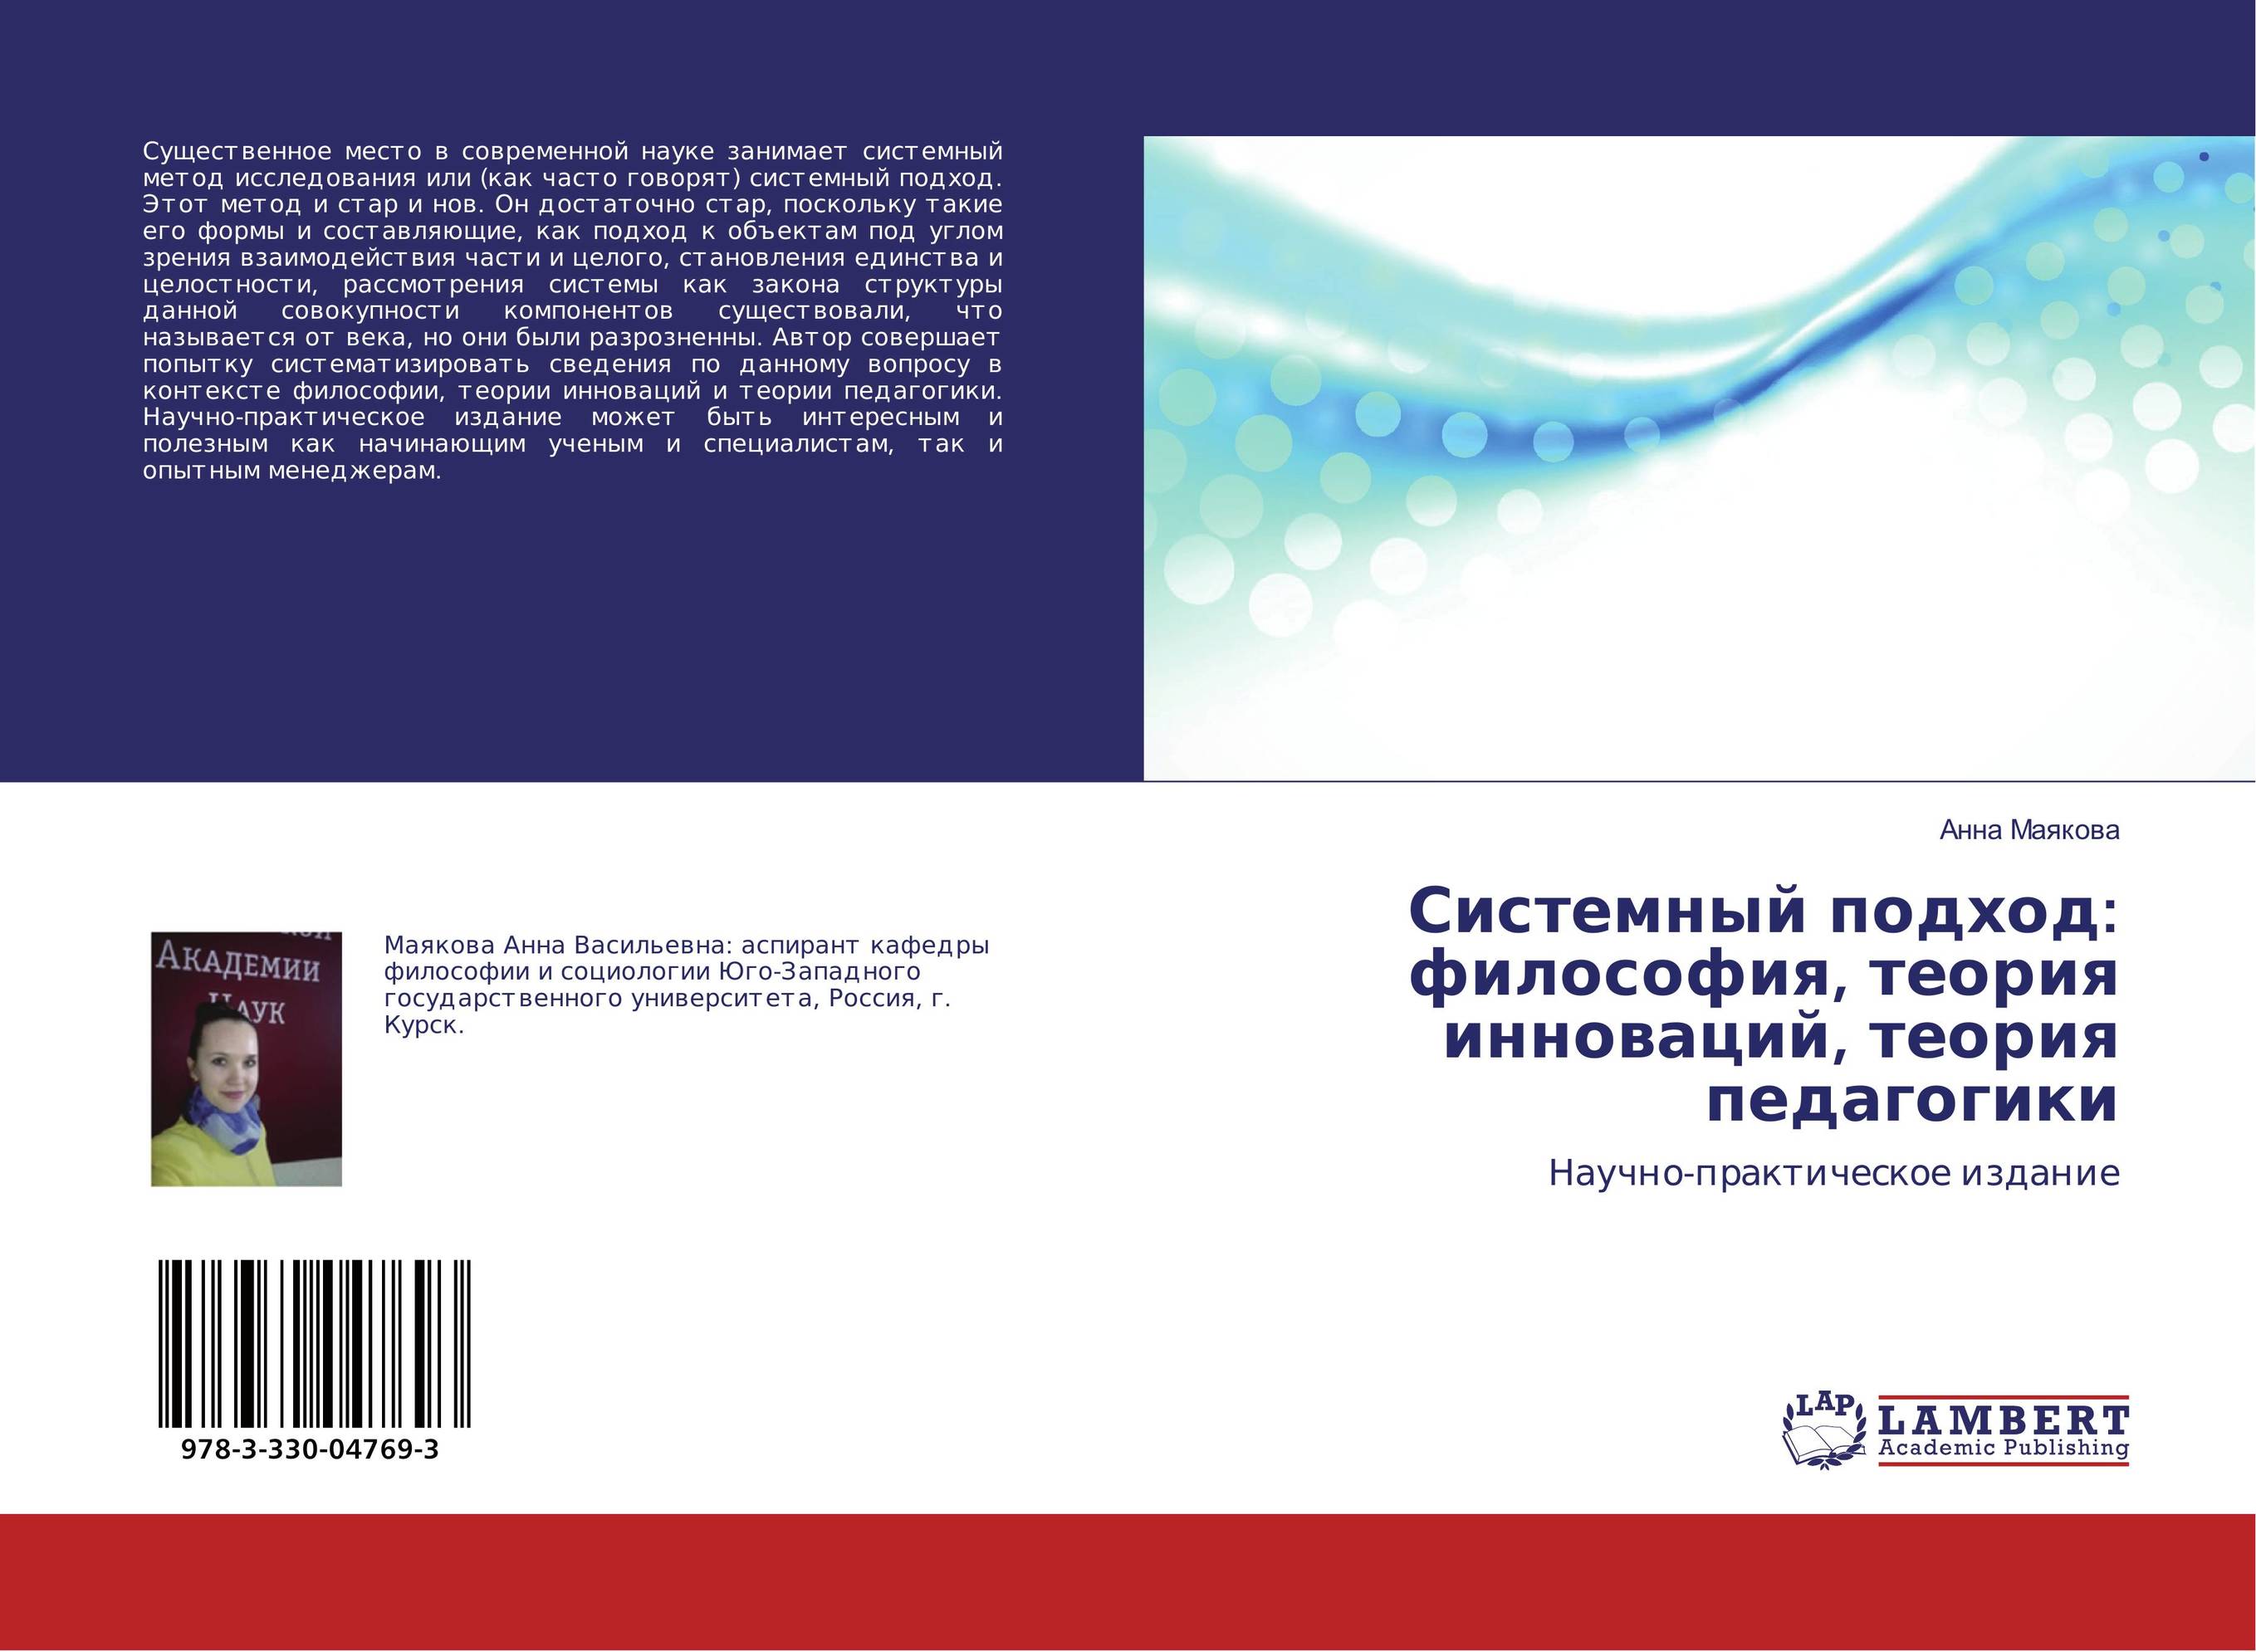 
        Системный подход: философия, теория инноваций, теория педагогики. Научно-практическое издание.
      